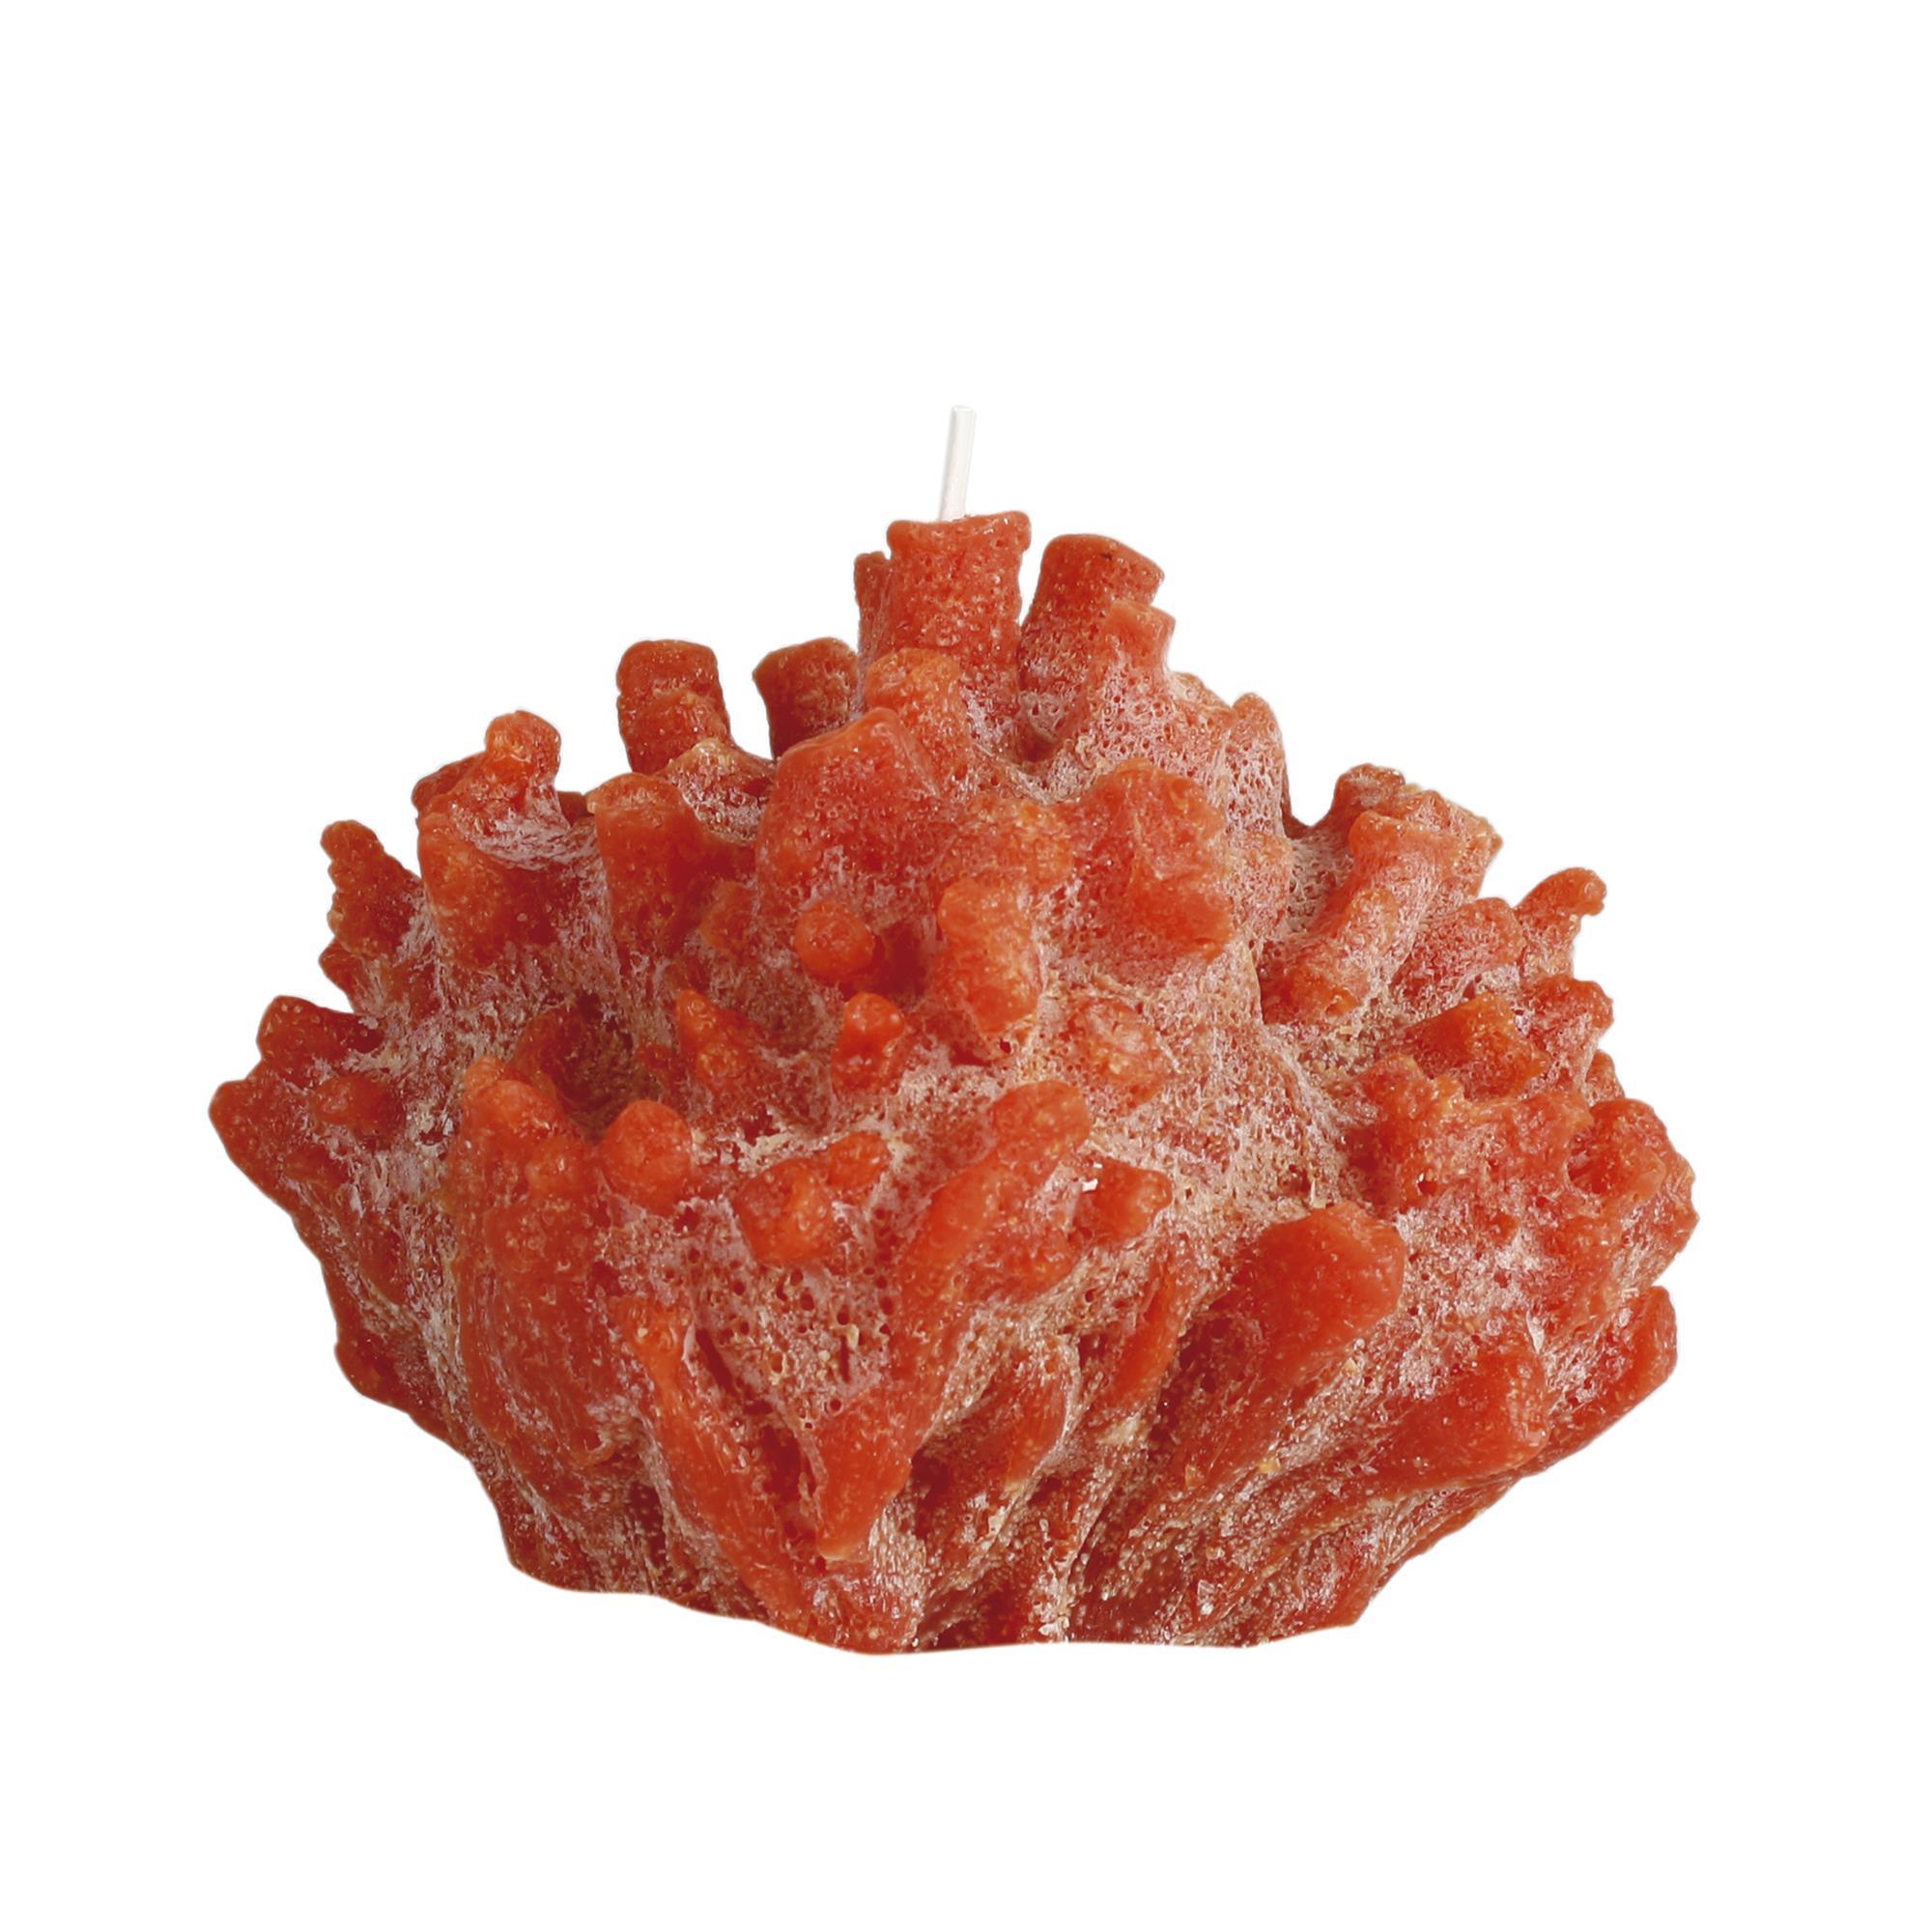 Cerabella sir lankester coral 41